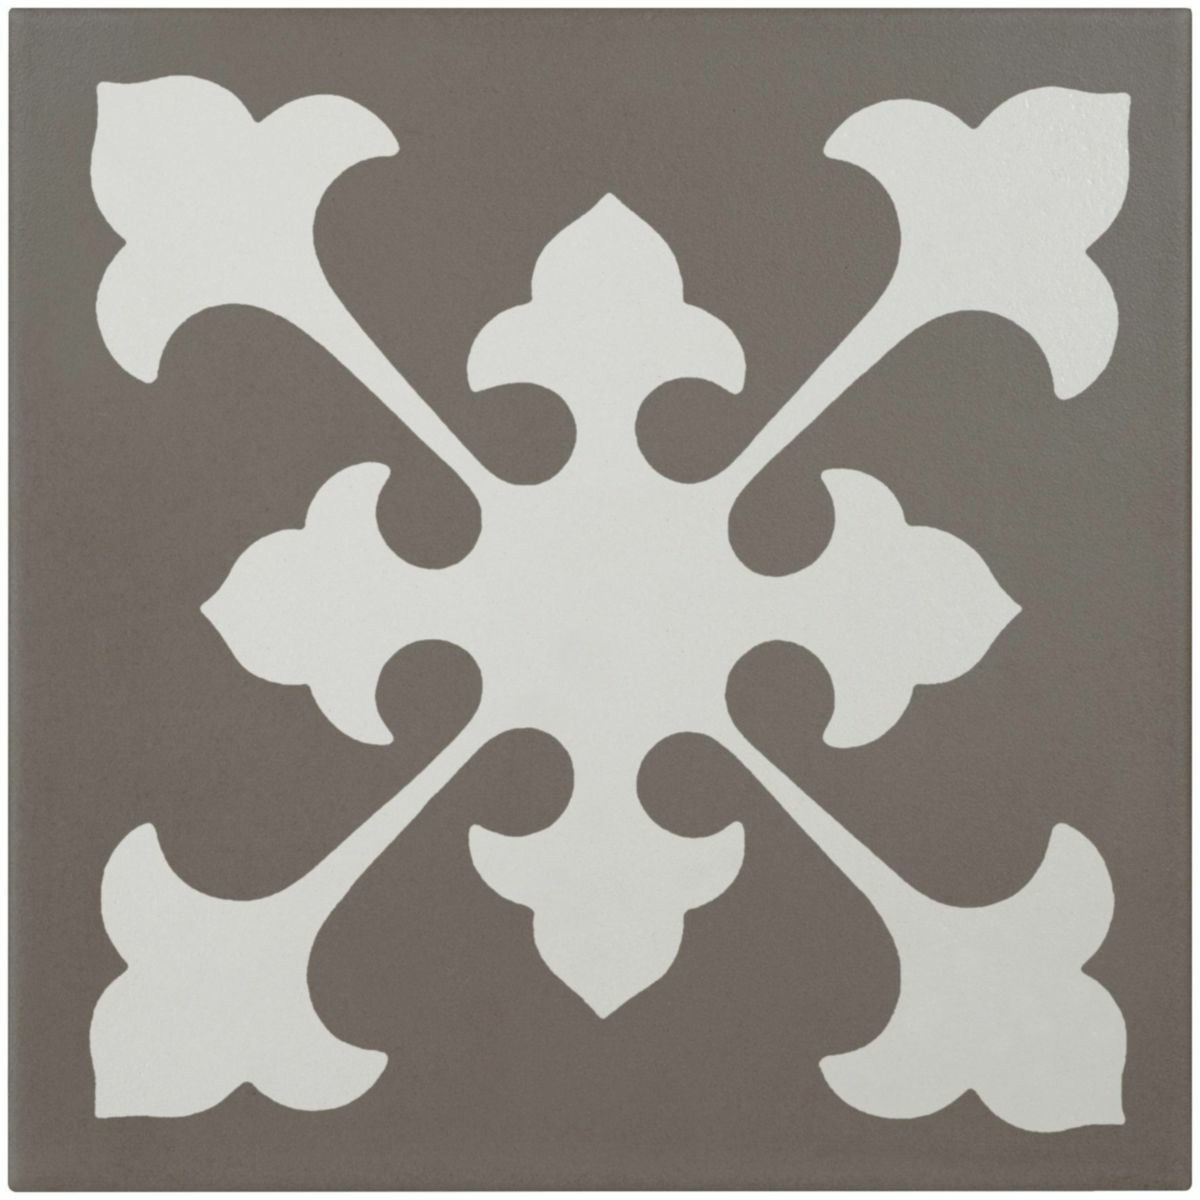 Grès cérame Bati Orient Classique blanc cassé / taupe décor 20 x 20 cm CEMI17